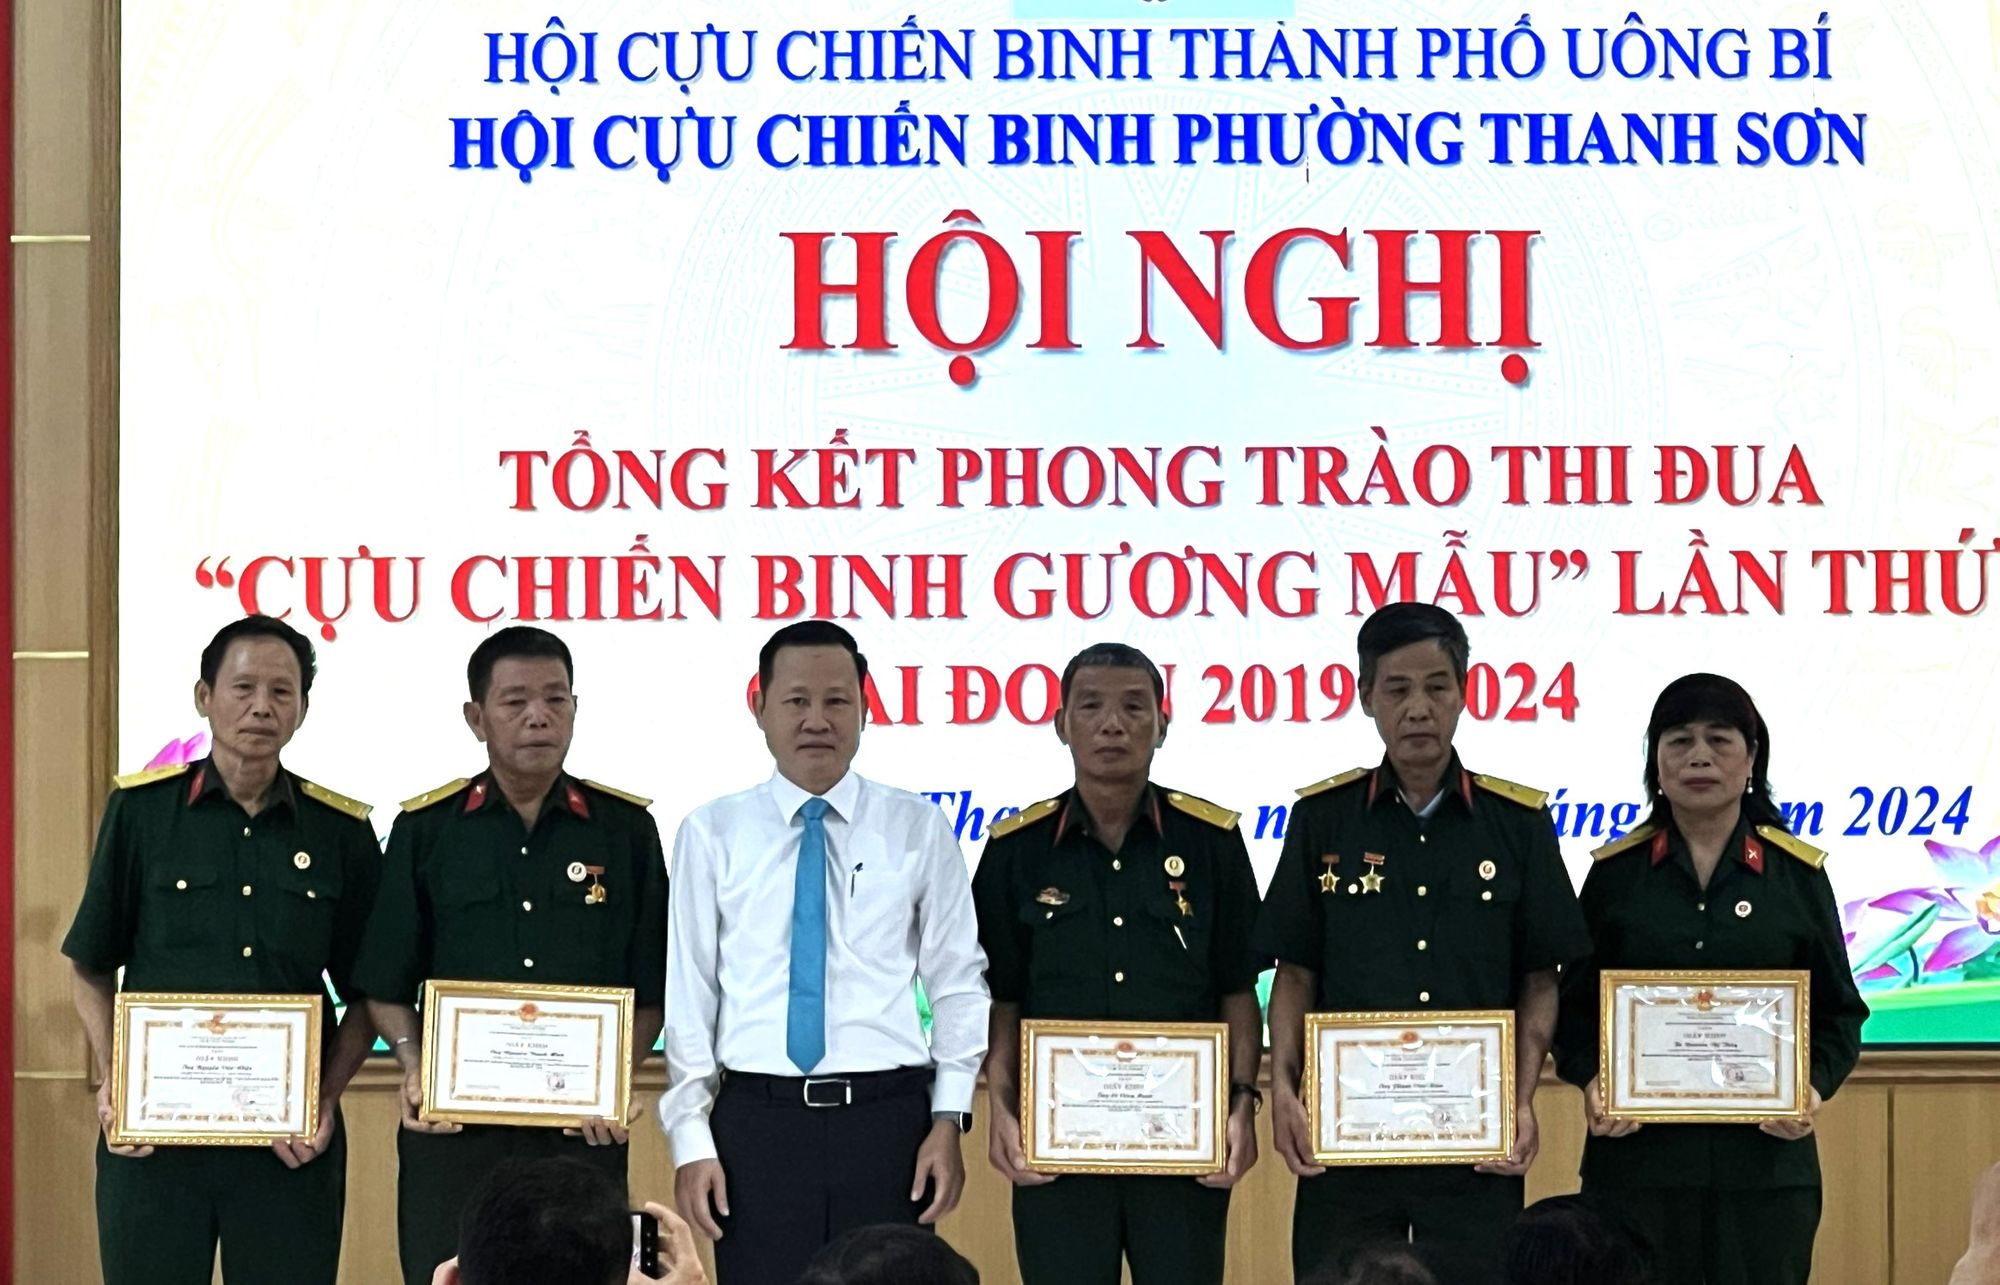 Hội CCB phường Thanh Sơn (Quảng Ninh): Tổng kết phong trào thi đua “CCB gương mẫu” giai đoạn 2019-2024